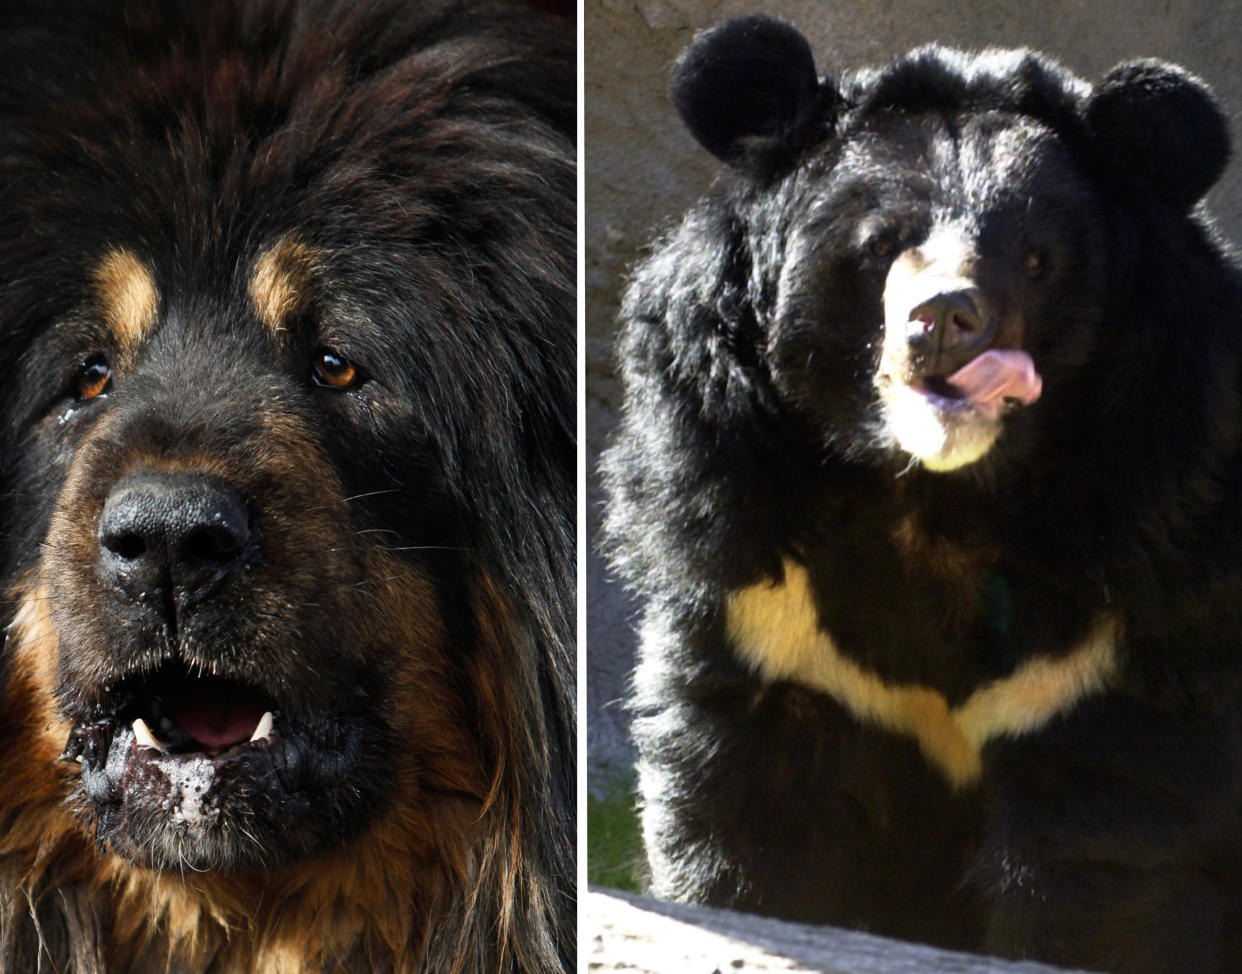 Eigentlich wollte die Dame eine Tibetdogge für ihre Familie kaufen, wie hier links im Bild. Bekommen hat sie stattdessen einen Kragenbären. (Bilder: AP Photo)